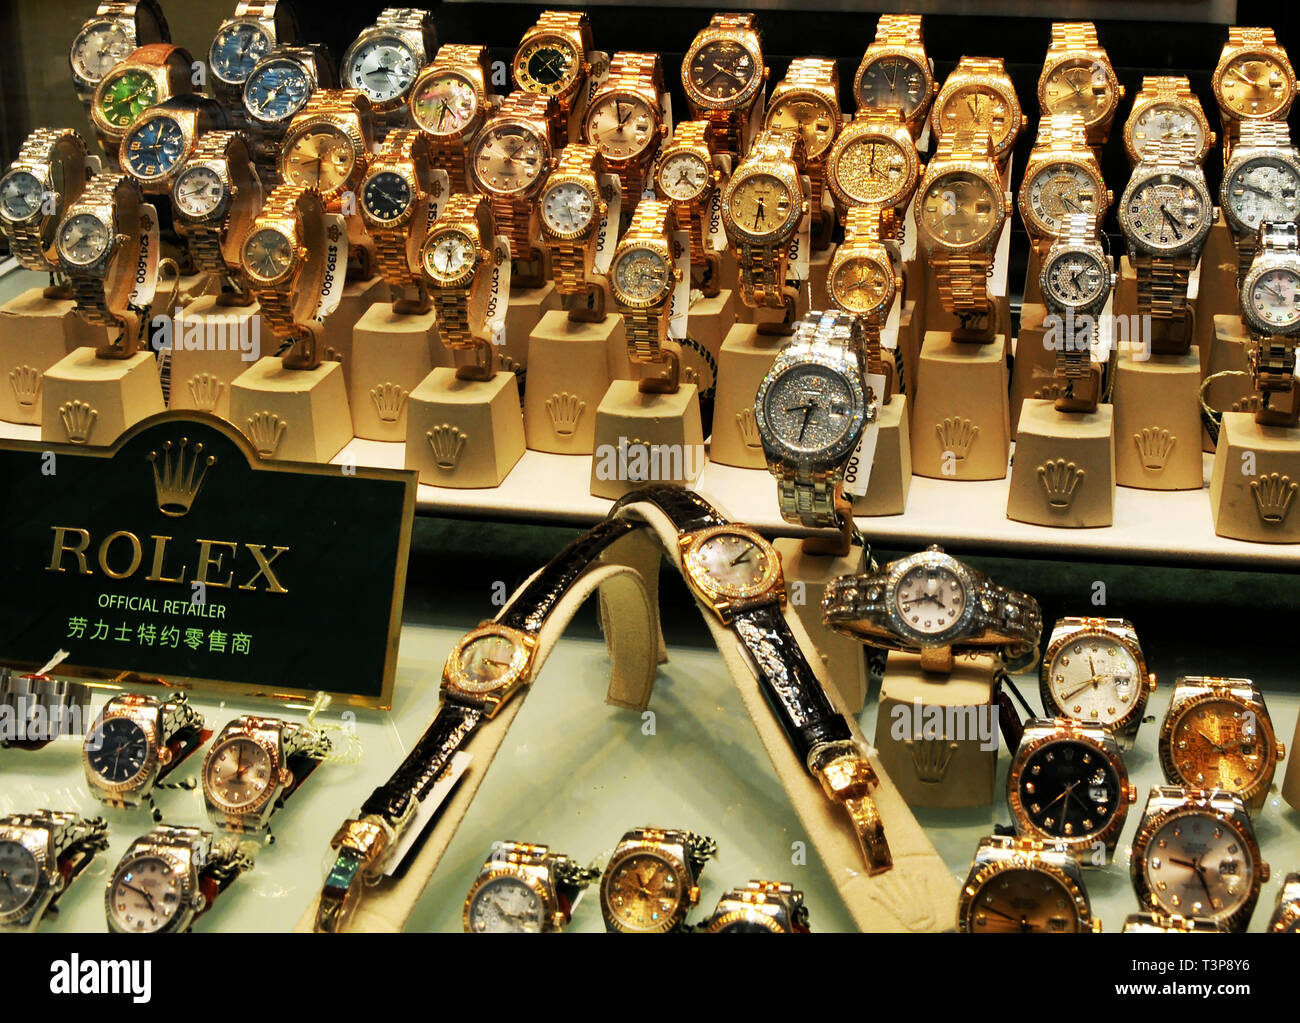 Rolex wathes, Hong Kong, China Stock Photo